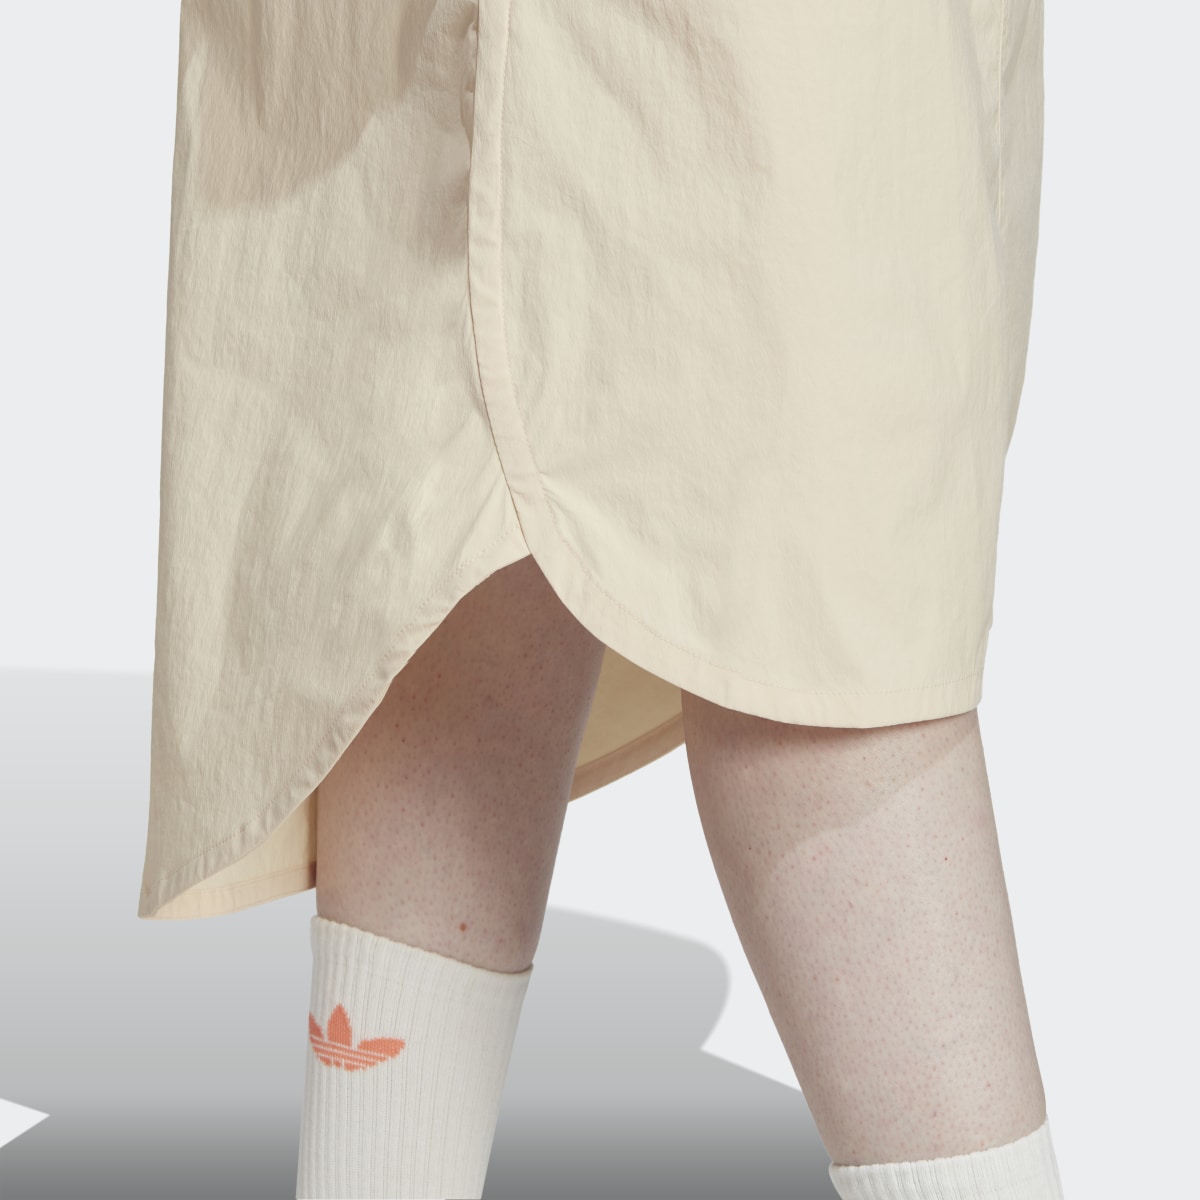 Adidas Adventure Skirt. 6